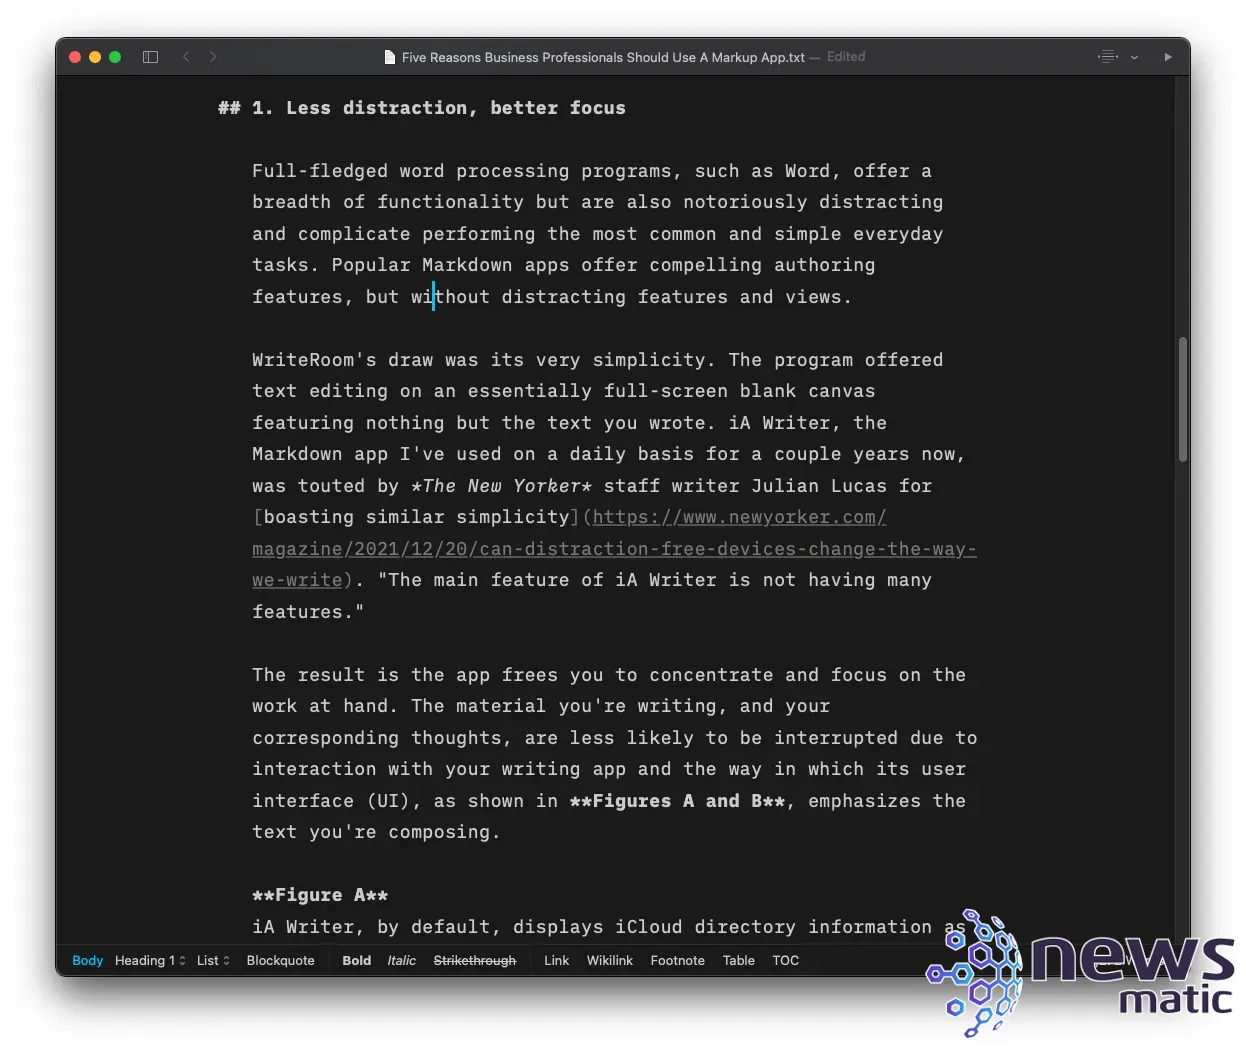 Las ventajas de usar aplicaciones Markdown para mejorar tu escritura - Software | Imagen 3 Newsmatic